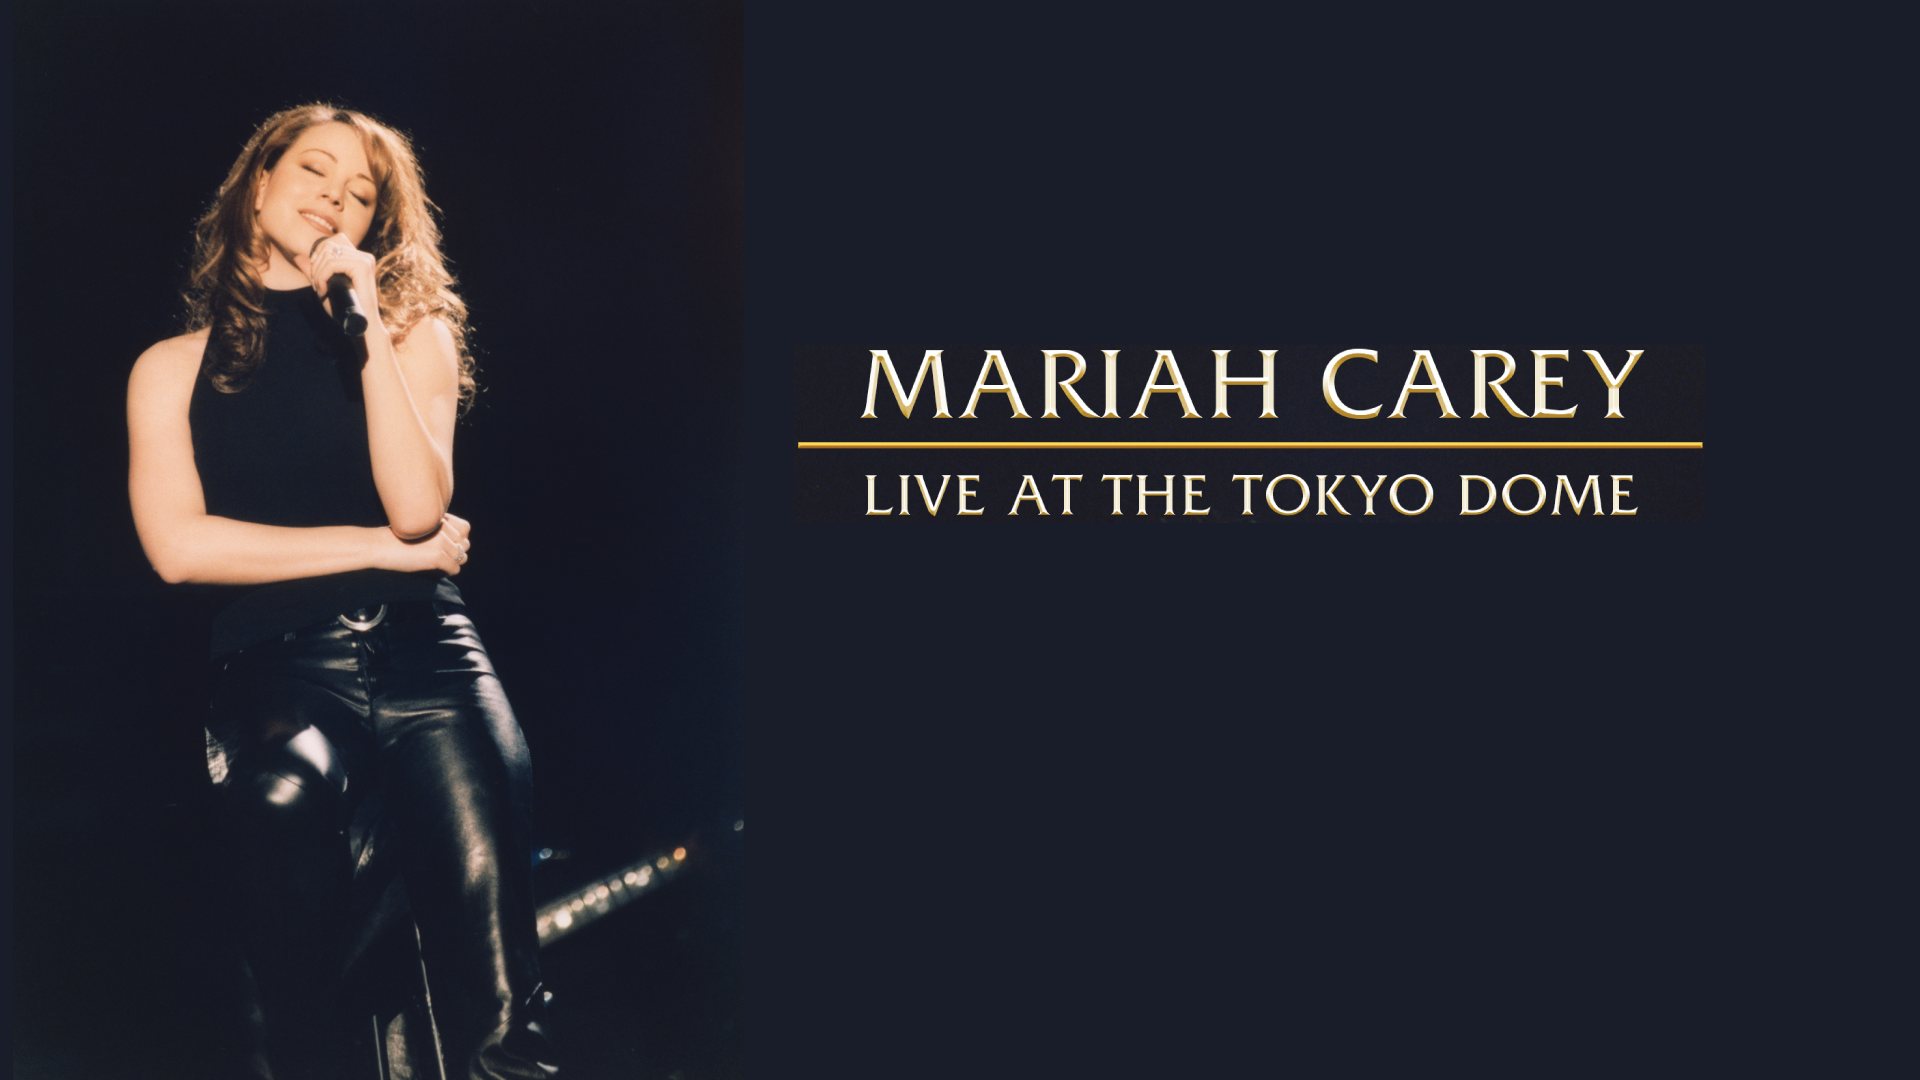 MARIAH CAREY: LIVE AT THE TOKYO DOME